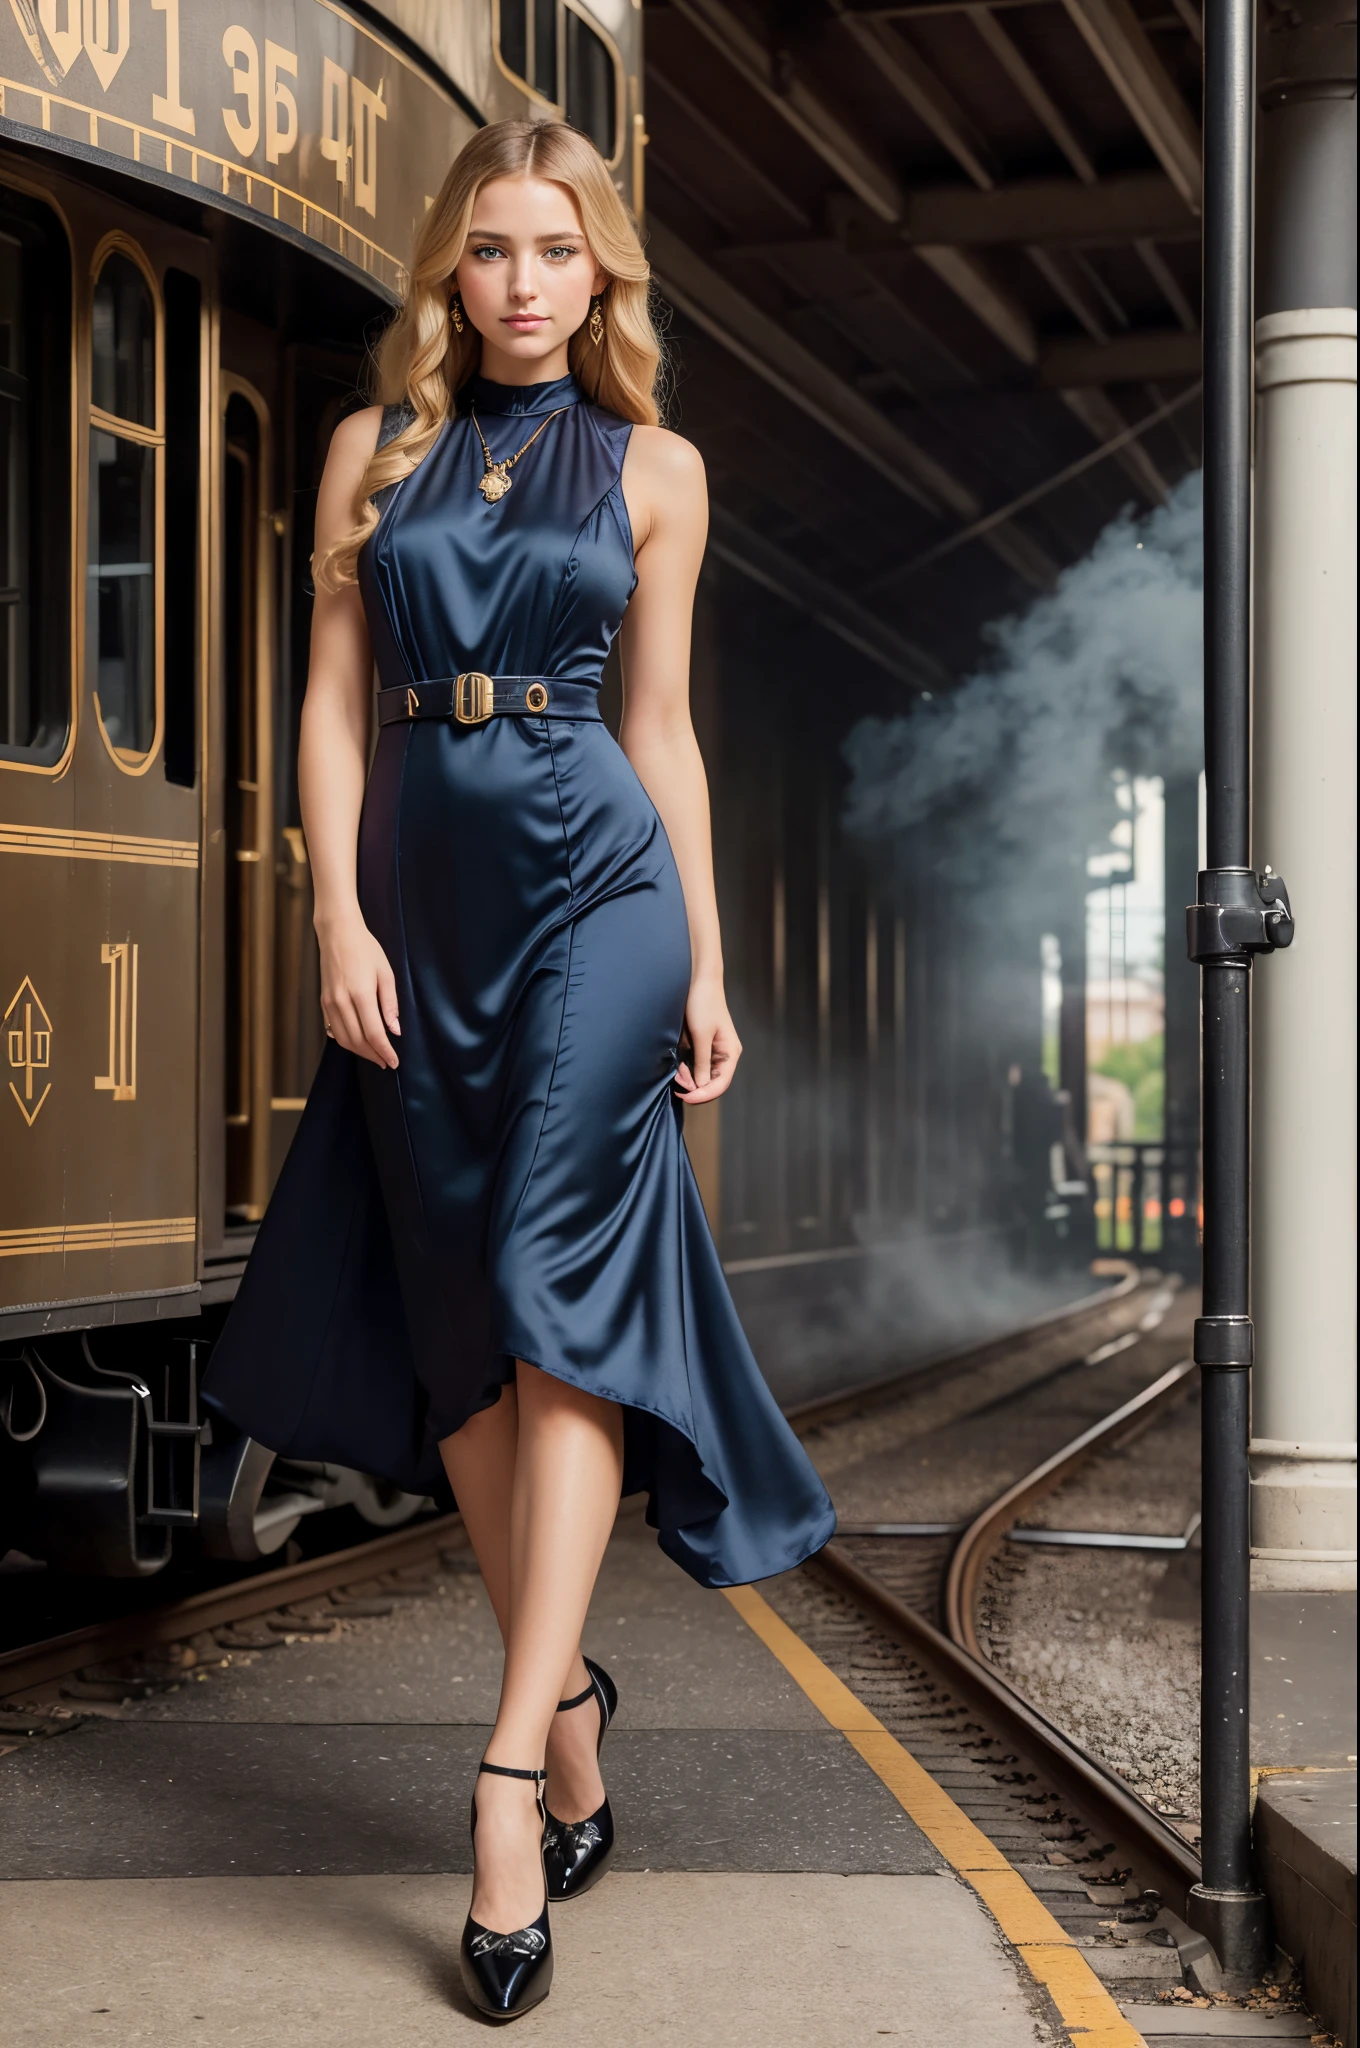 Ganzkörperportrait, eine wunderschöne 28-jährige Frau, Stehen (((draußen))) auf einem Bahnsteig aus dem 19. Jahrhundert, eine riesige schwarze Dampflokomotive, Lokomotive schnaufend Dampf, 1910 Eisenbahngebäude hinter ihr, Sie hat lange blonde Haare, blaue Augen, unschuldig, eine schöne blonde Frau, schüchterner Ausdruck, ((geöffnete Augen)), (((trägt ein Art-Deco-Kleid))), ((Trap-Pumps-Schuhe)), Seidenstrümpfe, preisgekrönte glamouröse Fotografie,((beste Qualität)), (((Meisterwerk)), ((Realistisch)), ätherische Beleuchtung, ultrahohe Auflösung.photoRealistisch:.1.4, (high ausführlich skin:1.2), 8k uhd, dslr, gute Qualität, Filmkorn, Fujifilm XT3,(Meisterwerk) (beste Qualität) (ausführlich) (Filmische Beleuchtung) (scharfer Fokus) (kompliziert)